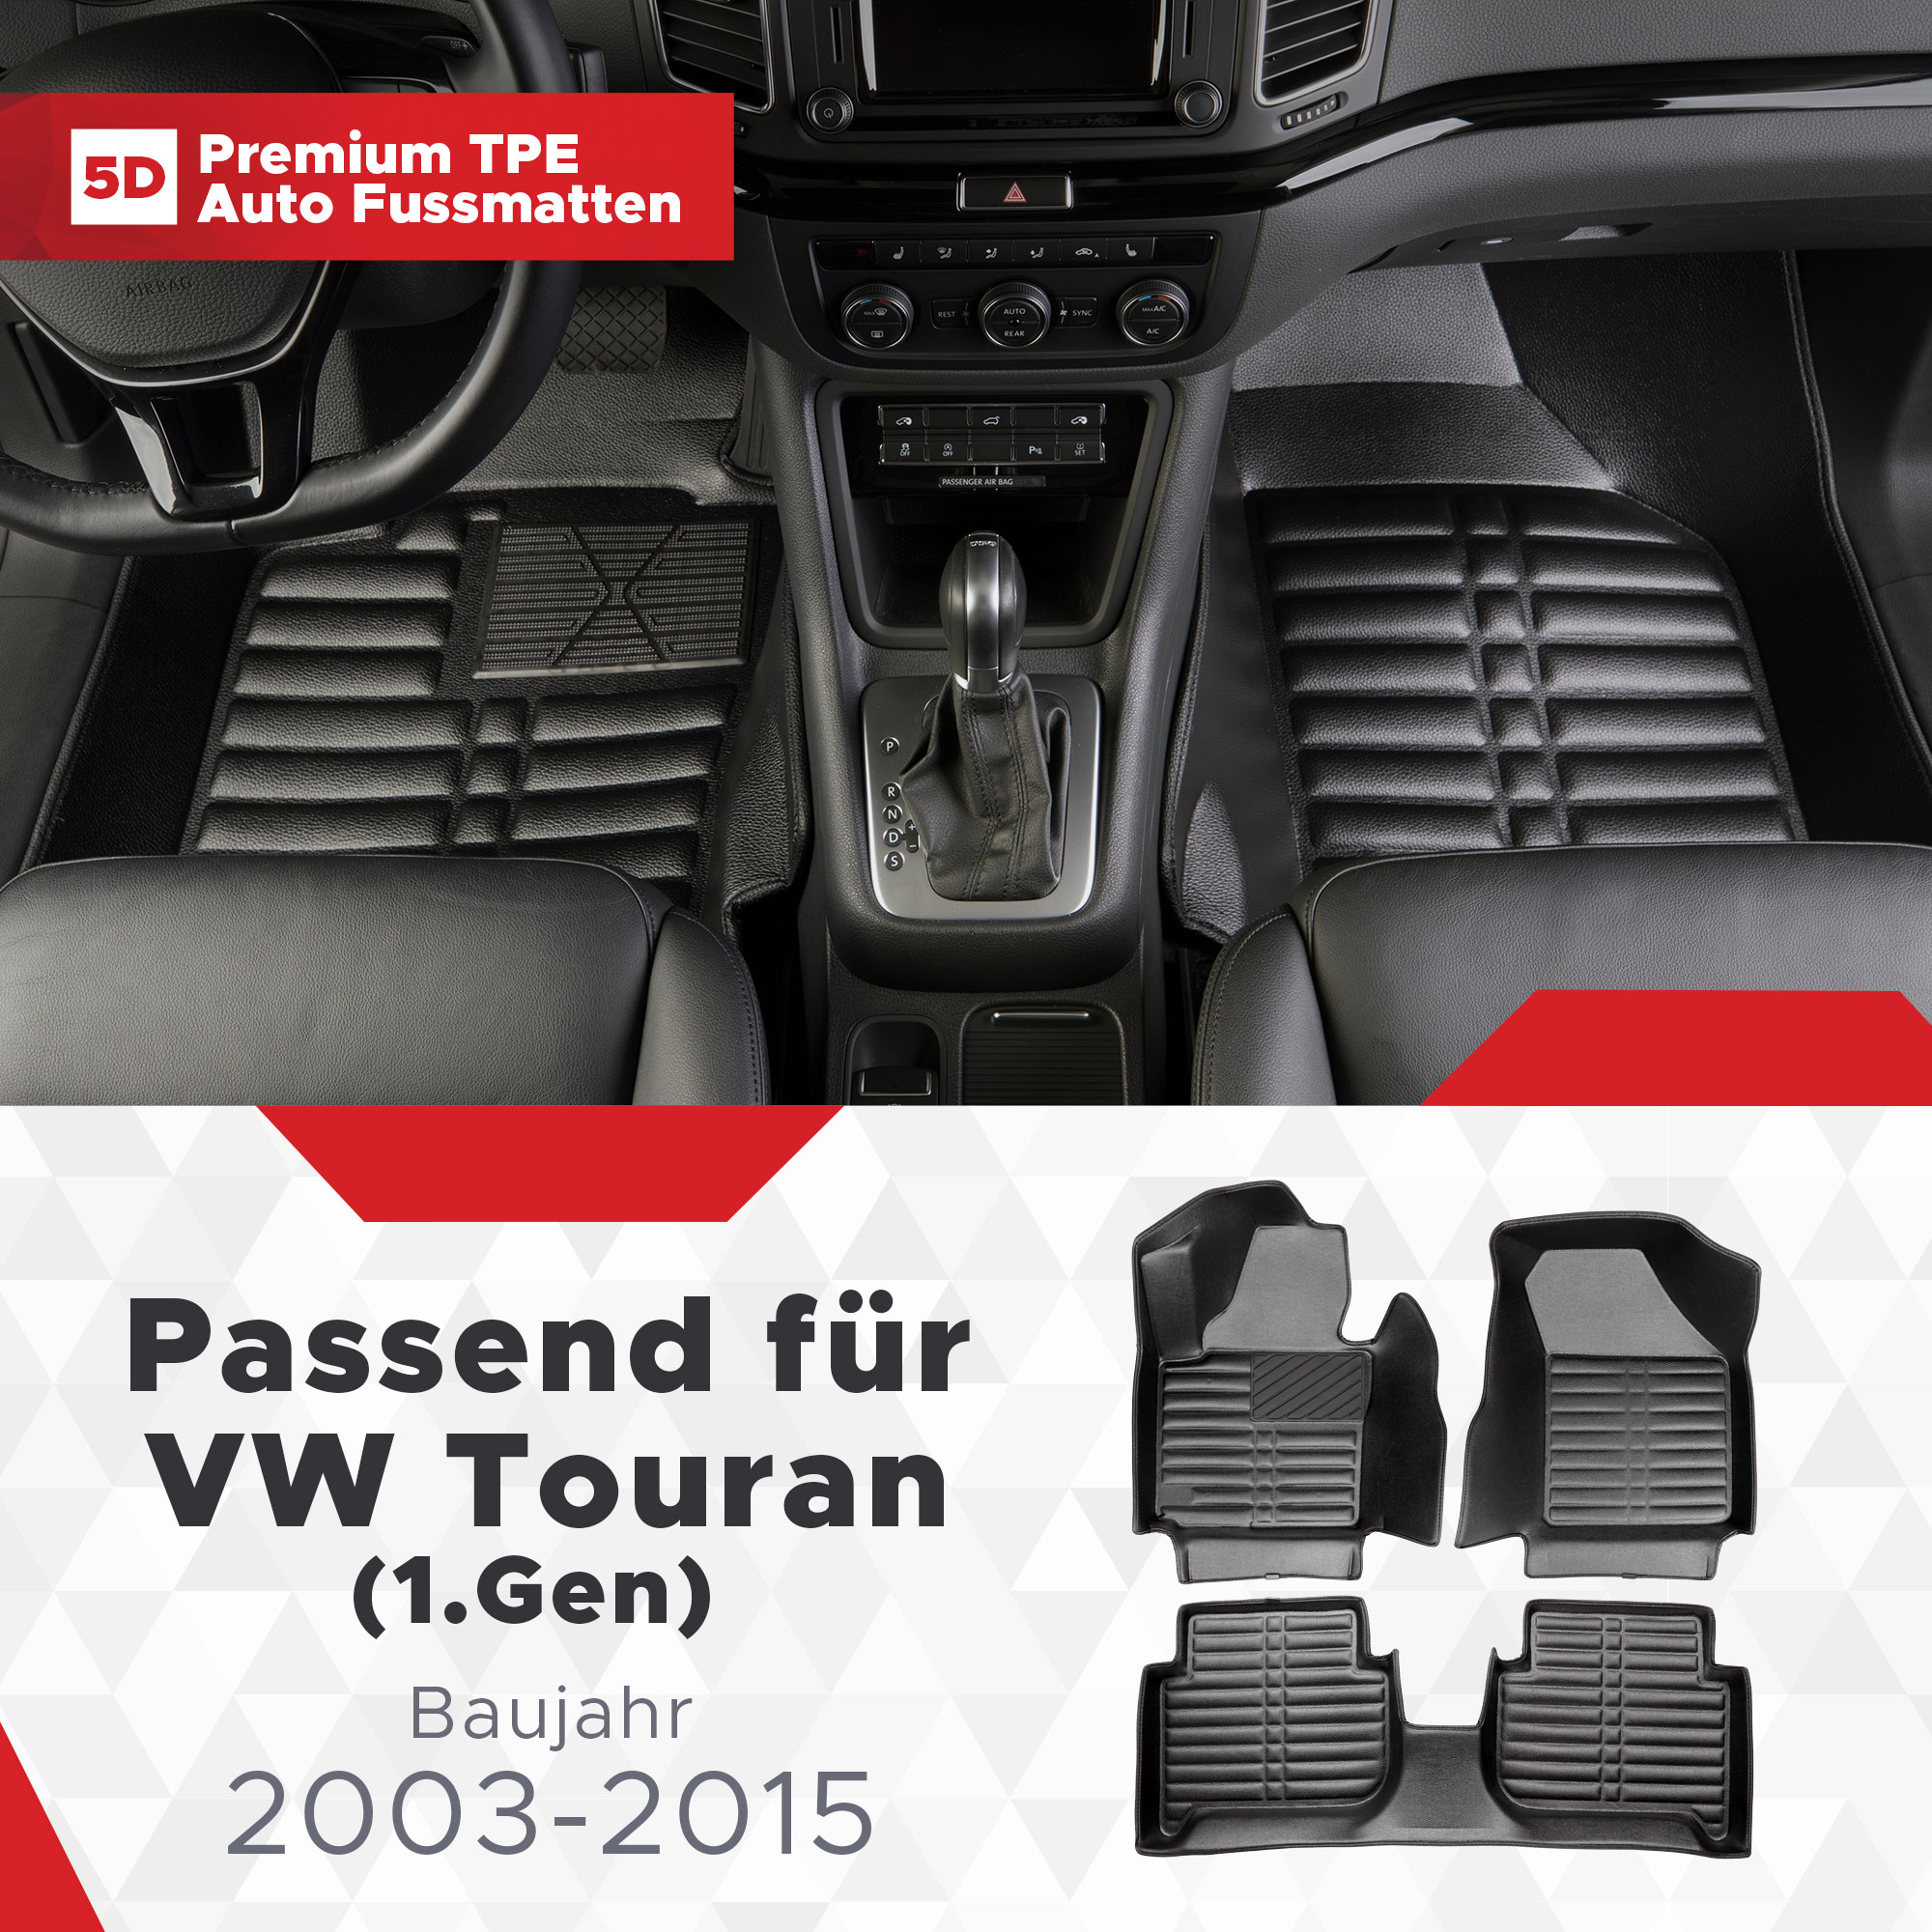 VW (1.Gen) 2003-2015 Bj Touran TPE 5D Fussmatten